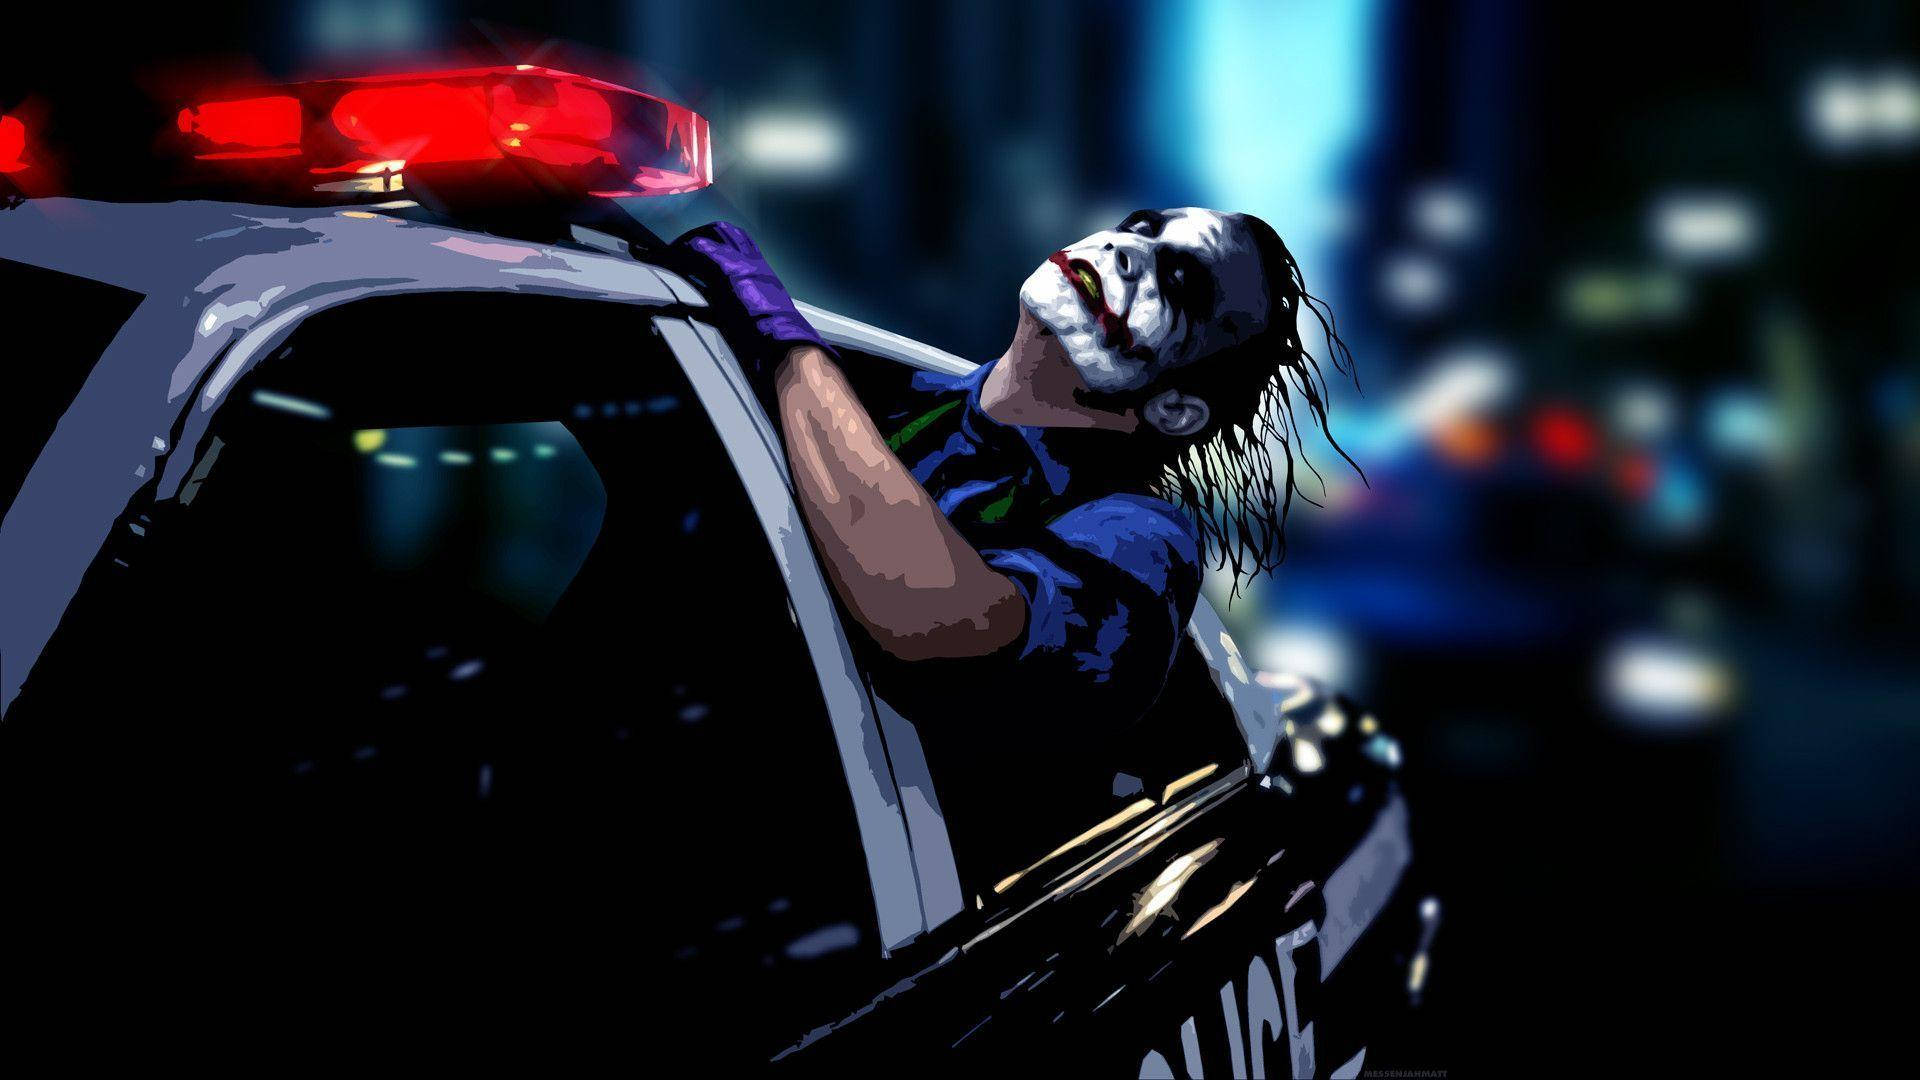 Joker 4k Ultra Hd Head Out Of Car Wallpaper